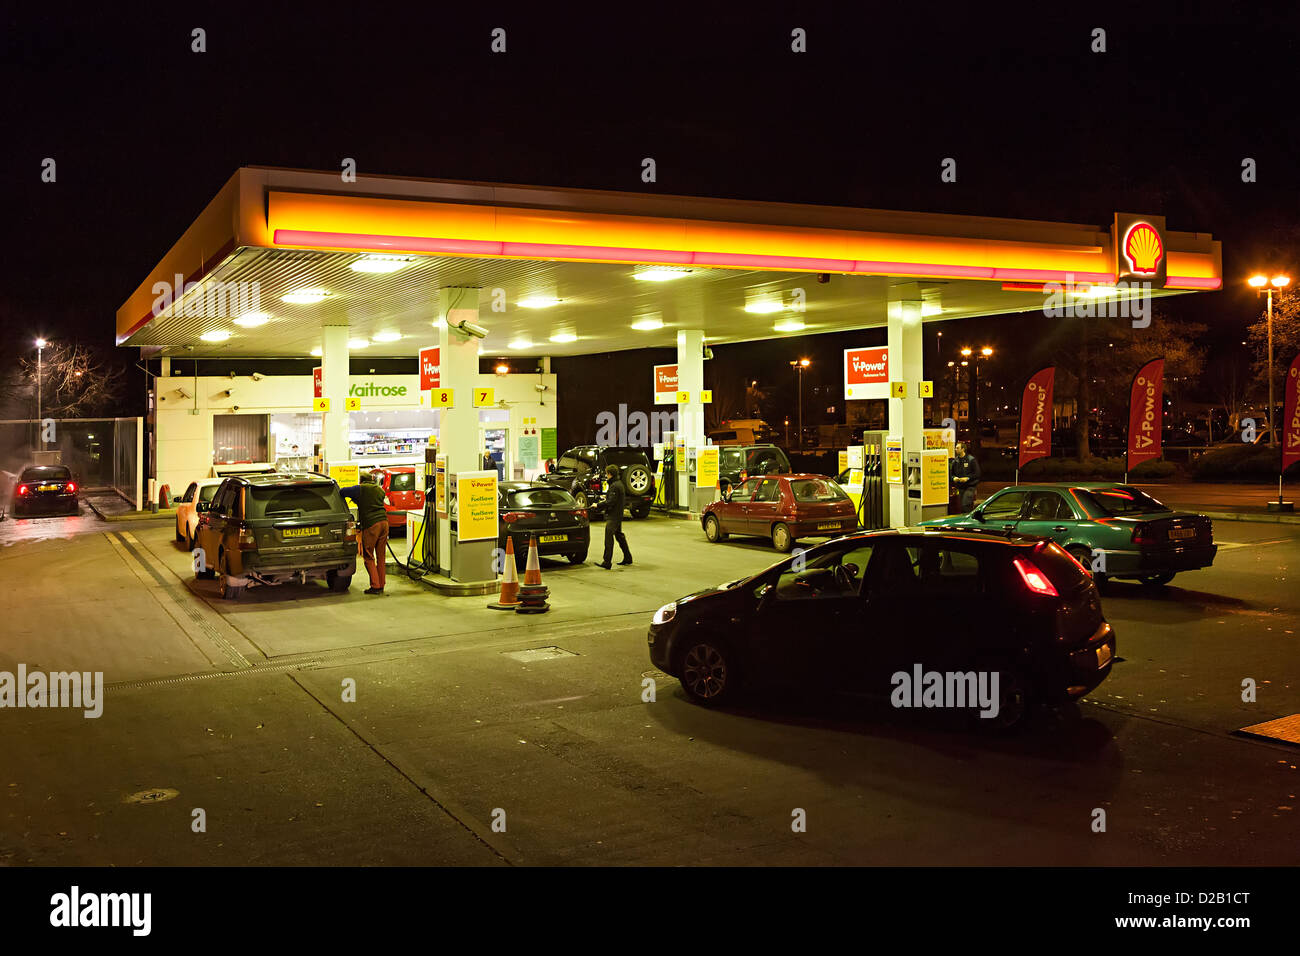 Estación de llenado de gasolina en el supermercado Waitrose durante la noche, Wales, REINO UNIDO Foto de stock